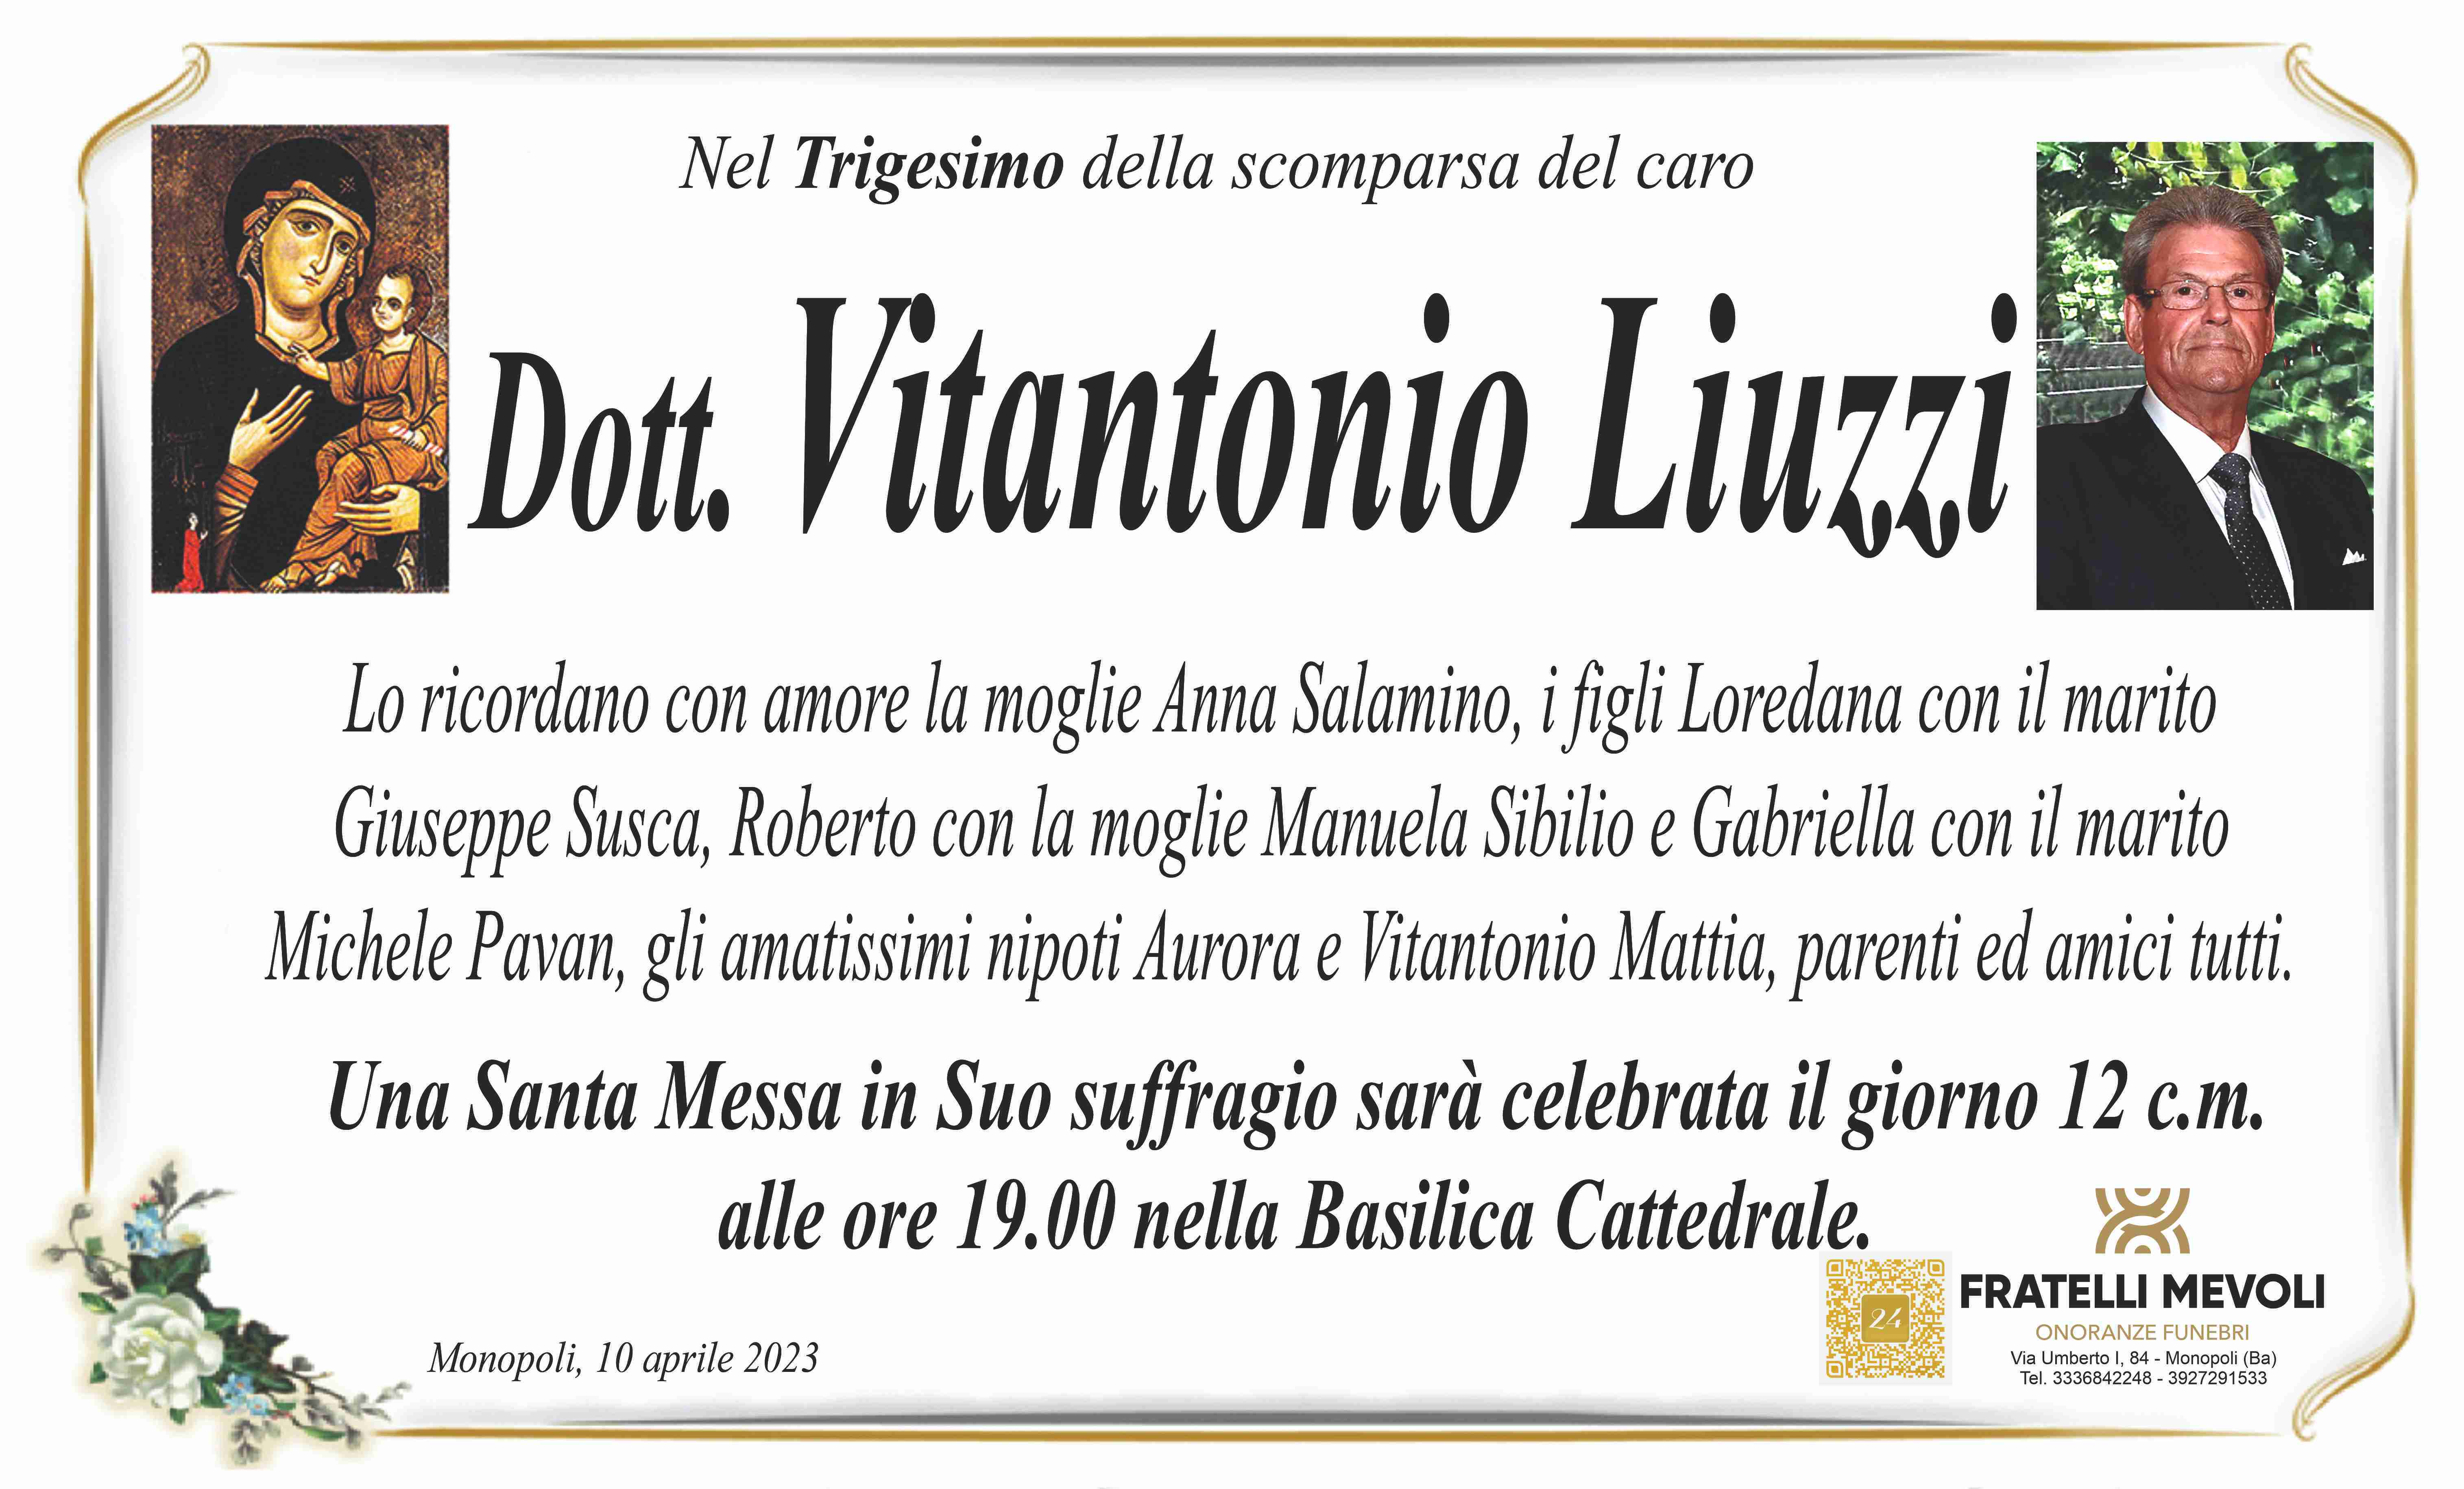 Vitantonio Liuzzi